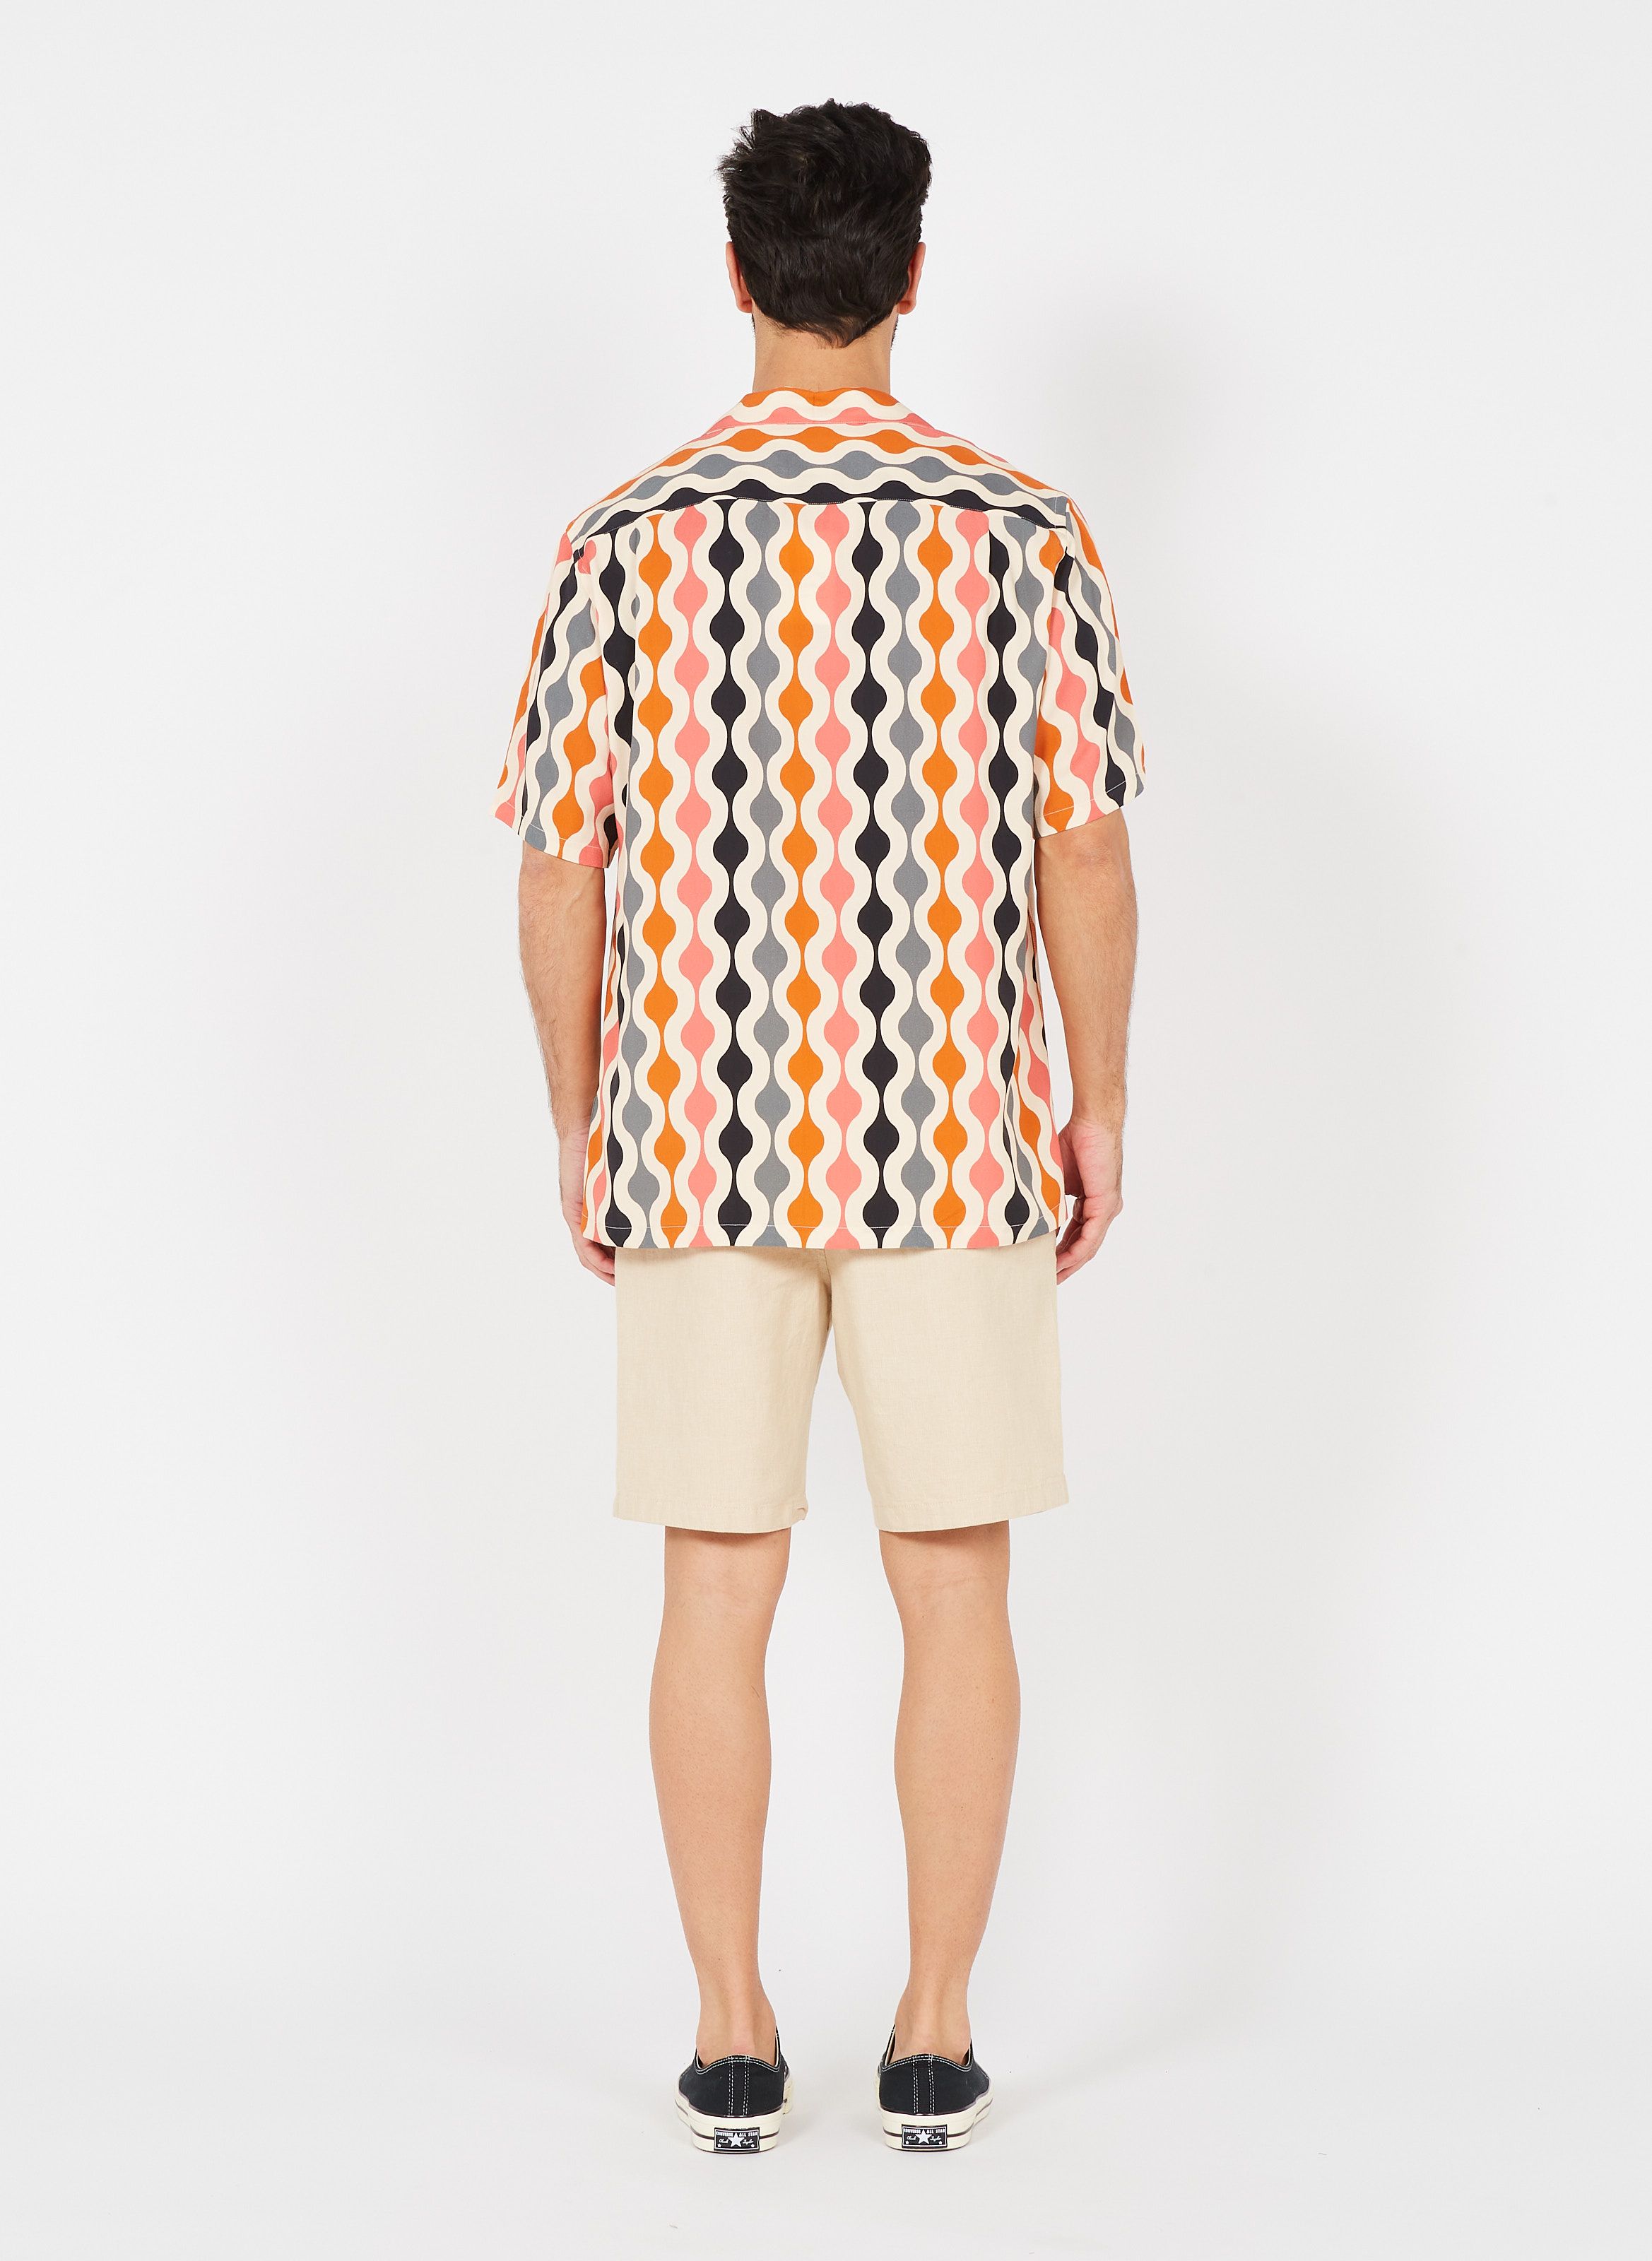 Shirts Portuguese Flannel Men: New Collection Online | Place des 